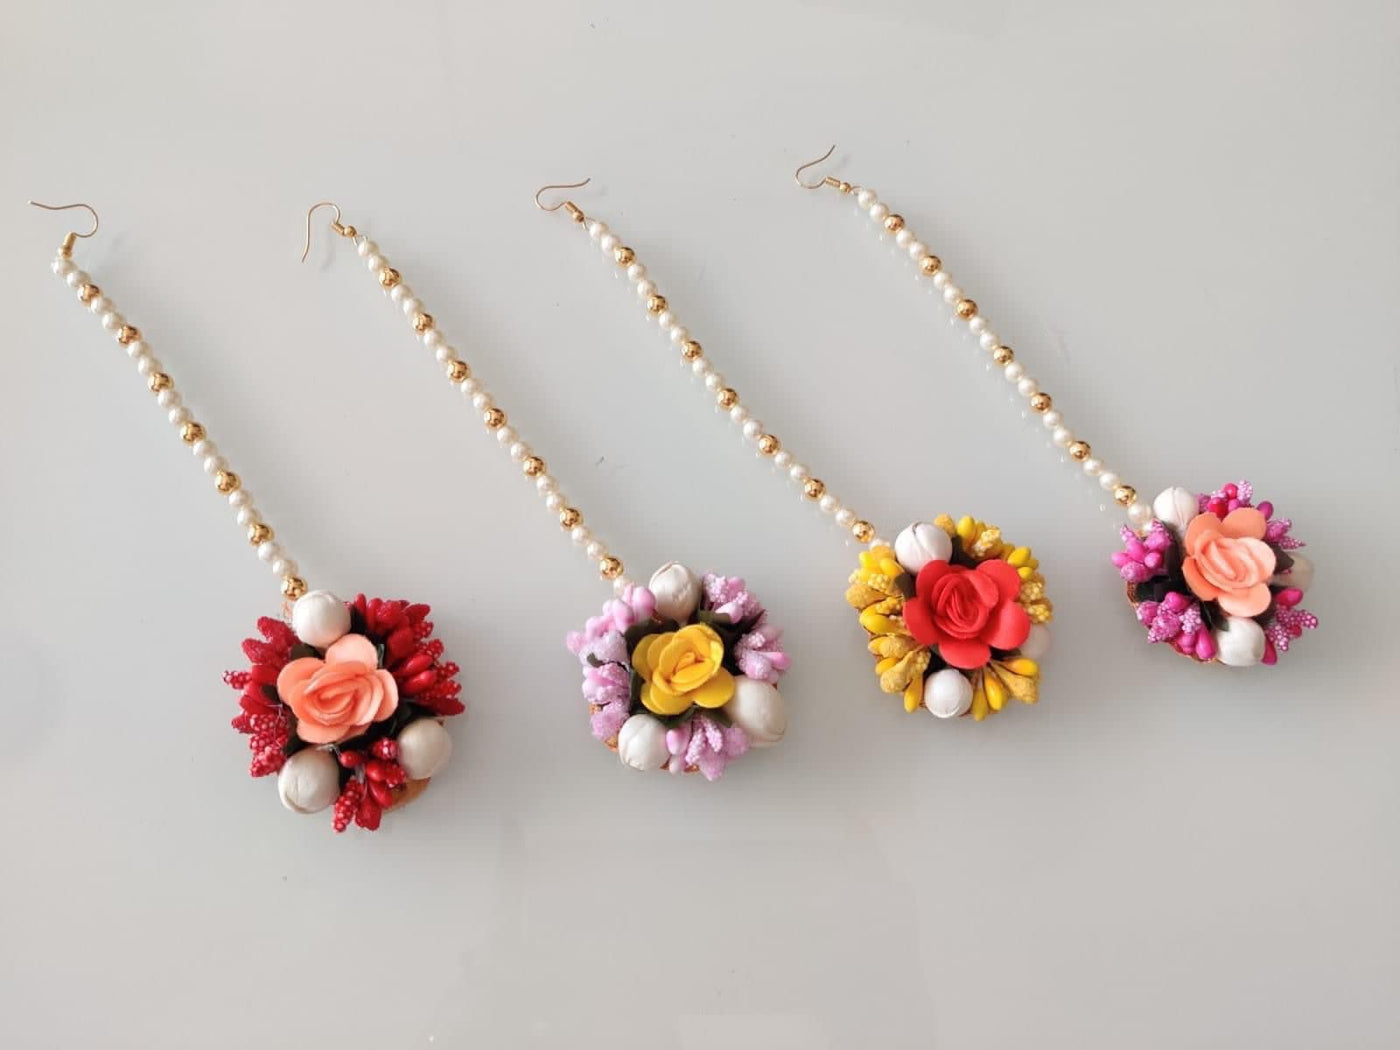 LAMANSH Floral 🌺 maangtika Assorted colors / Set of 20 Maangtika's LAMANSH® ( Set of 20 ) Artificial Flower Maangtika's / Bridesmaid Giveaways mogra flowers maangtika's set